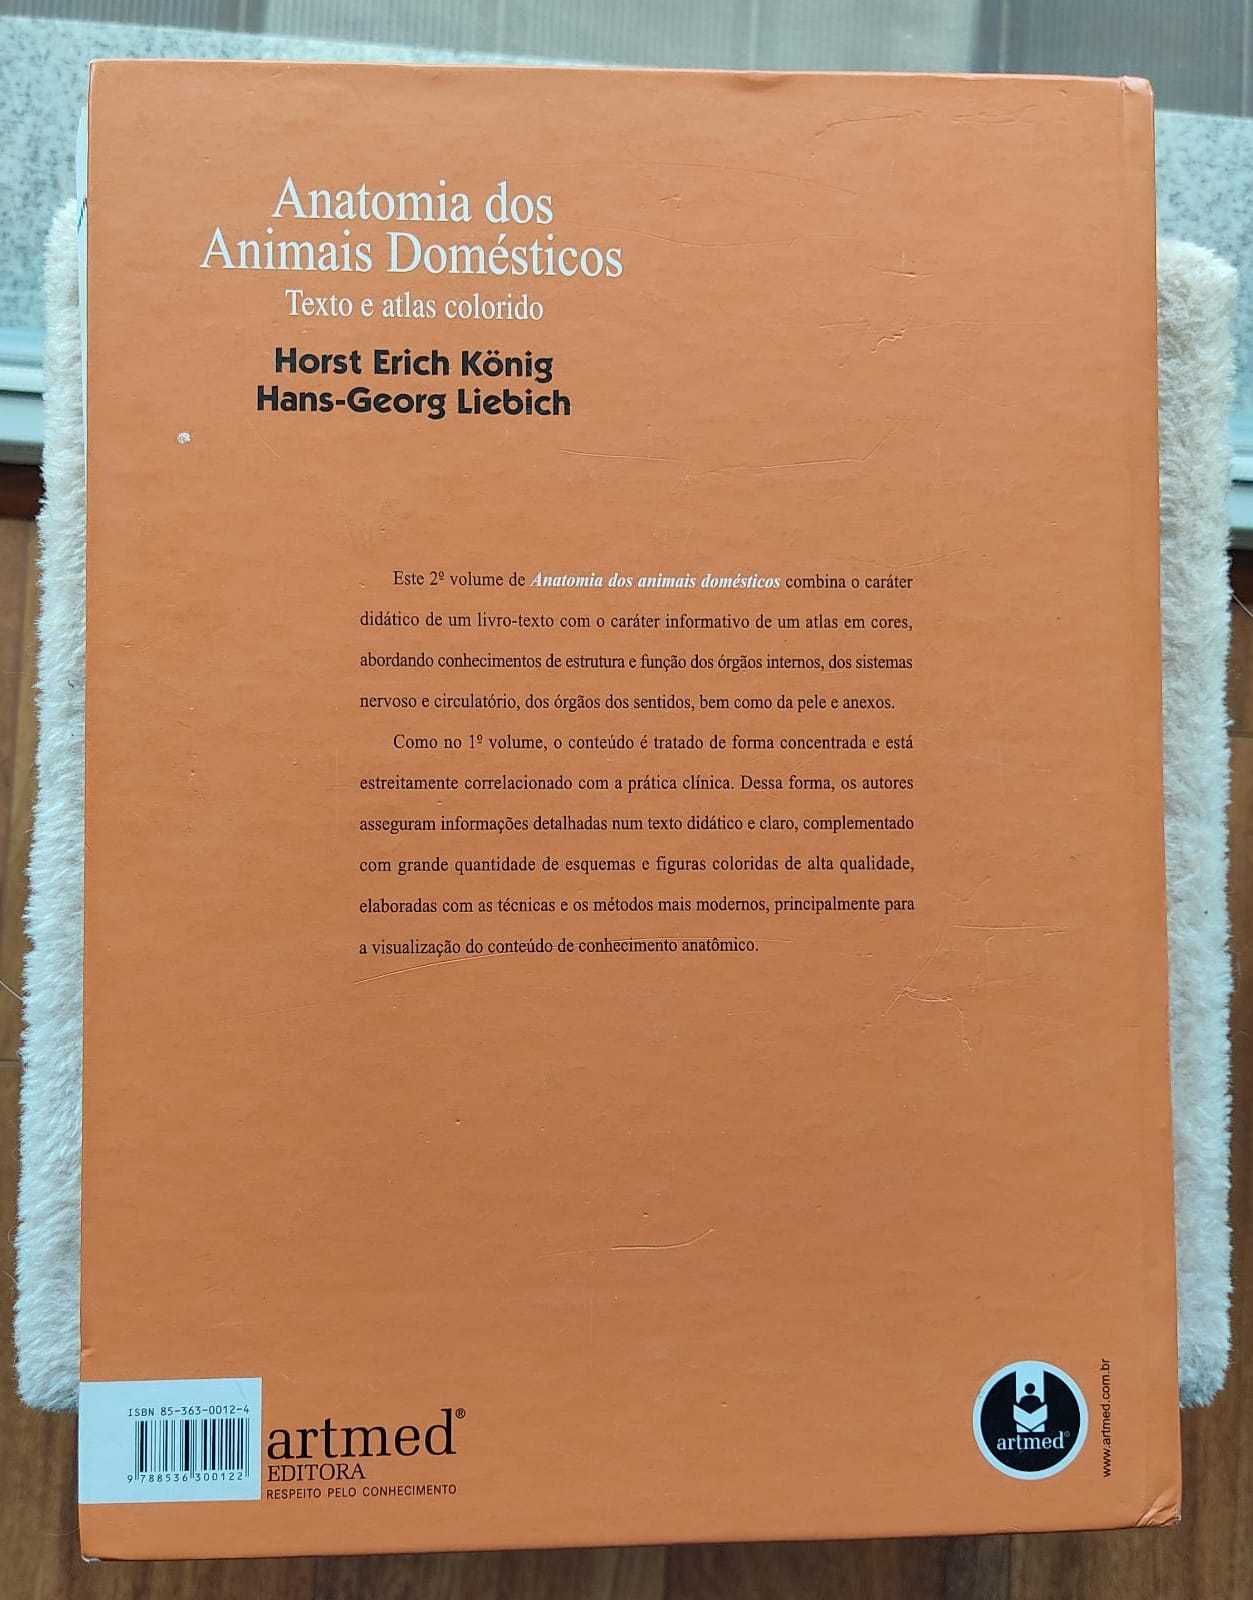 Anatomia dos animais domésticos vol 2